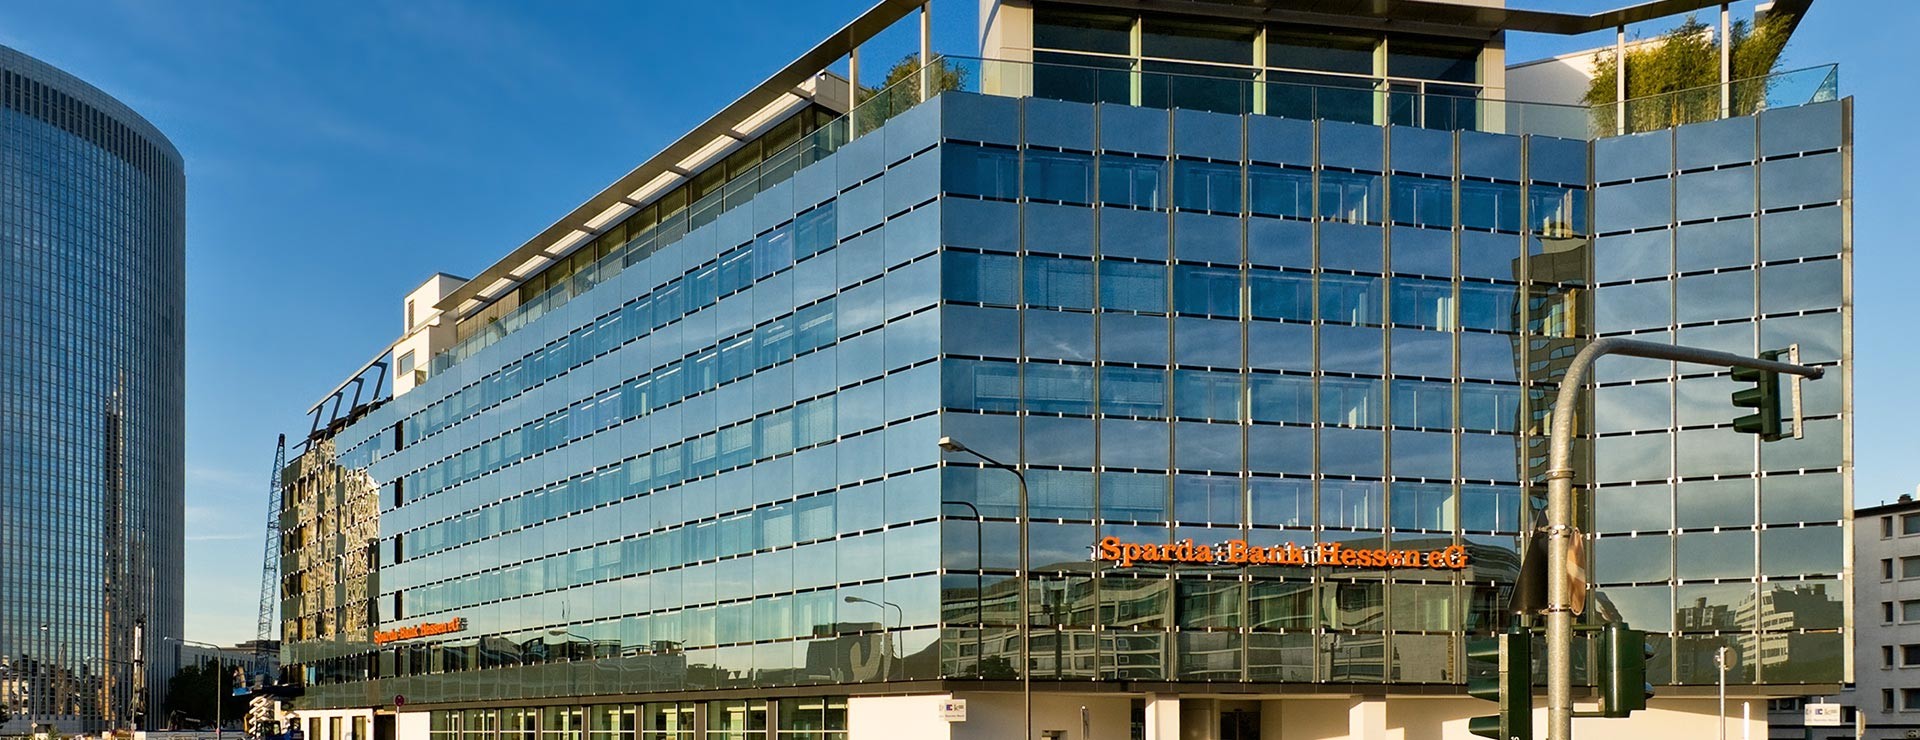 Sparda Bank Hessen Eg Frankfurt Bgf Architekten Wiesbaden